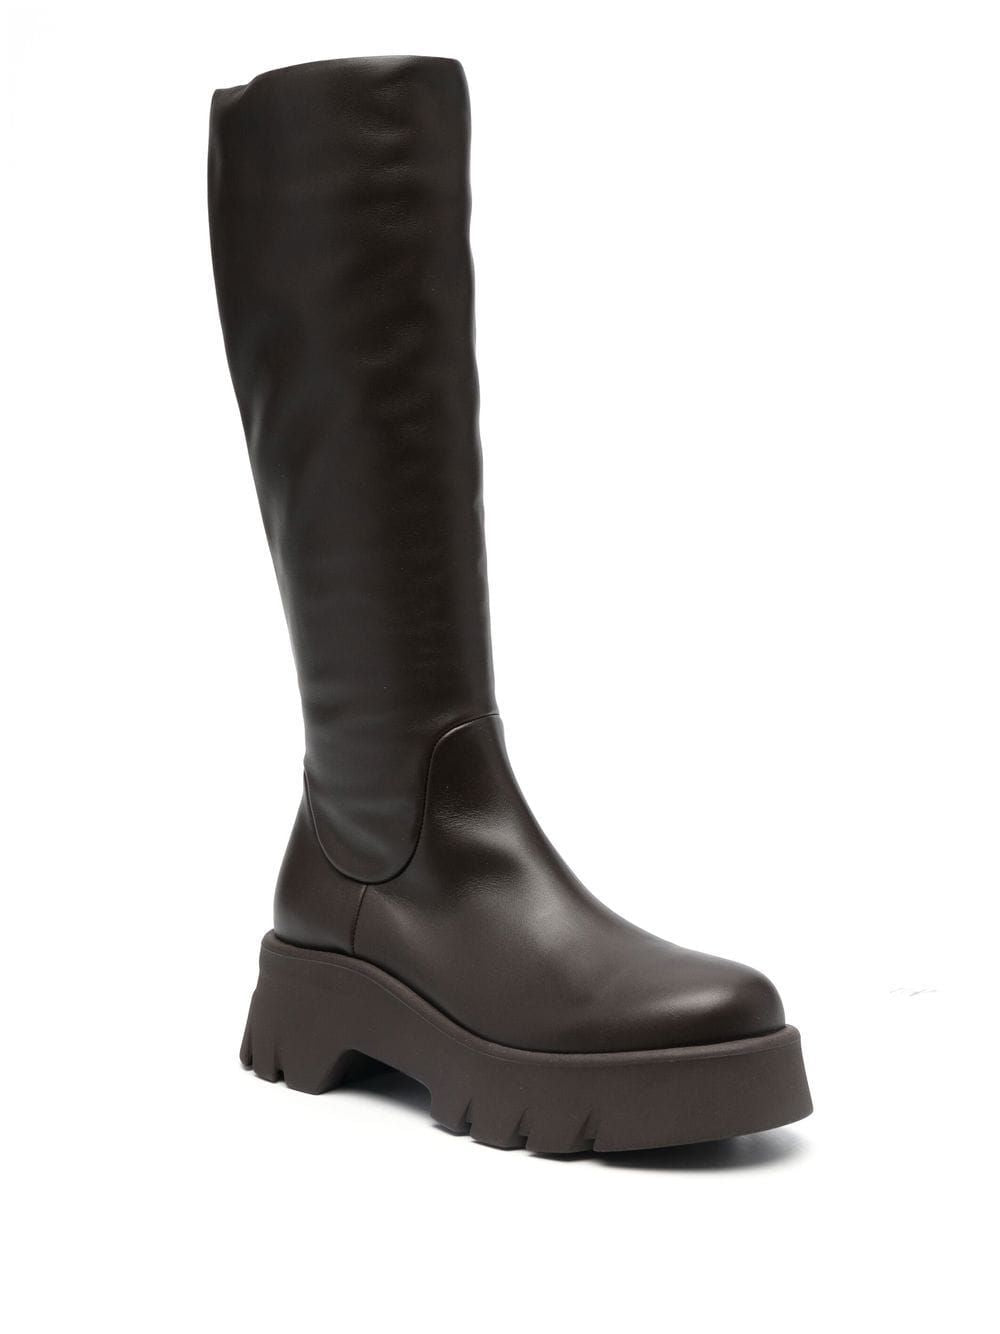 瑞士迪都羅西茶色女式皮短靴 - FW22系列